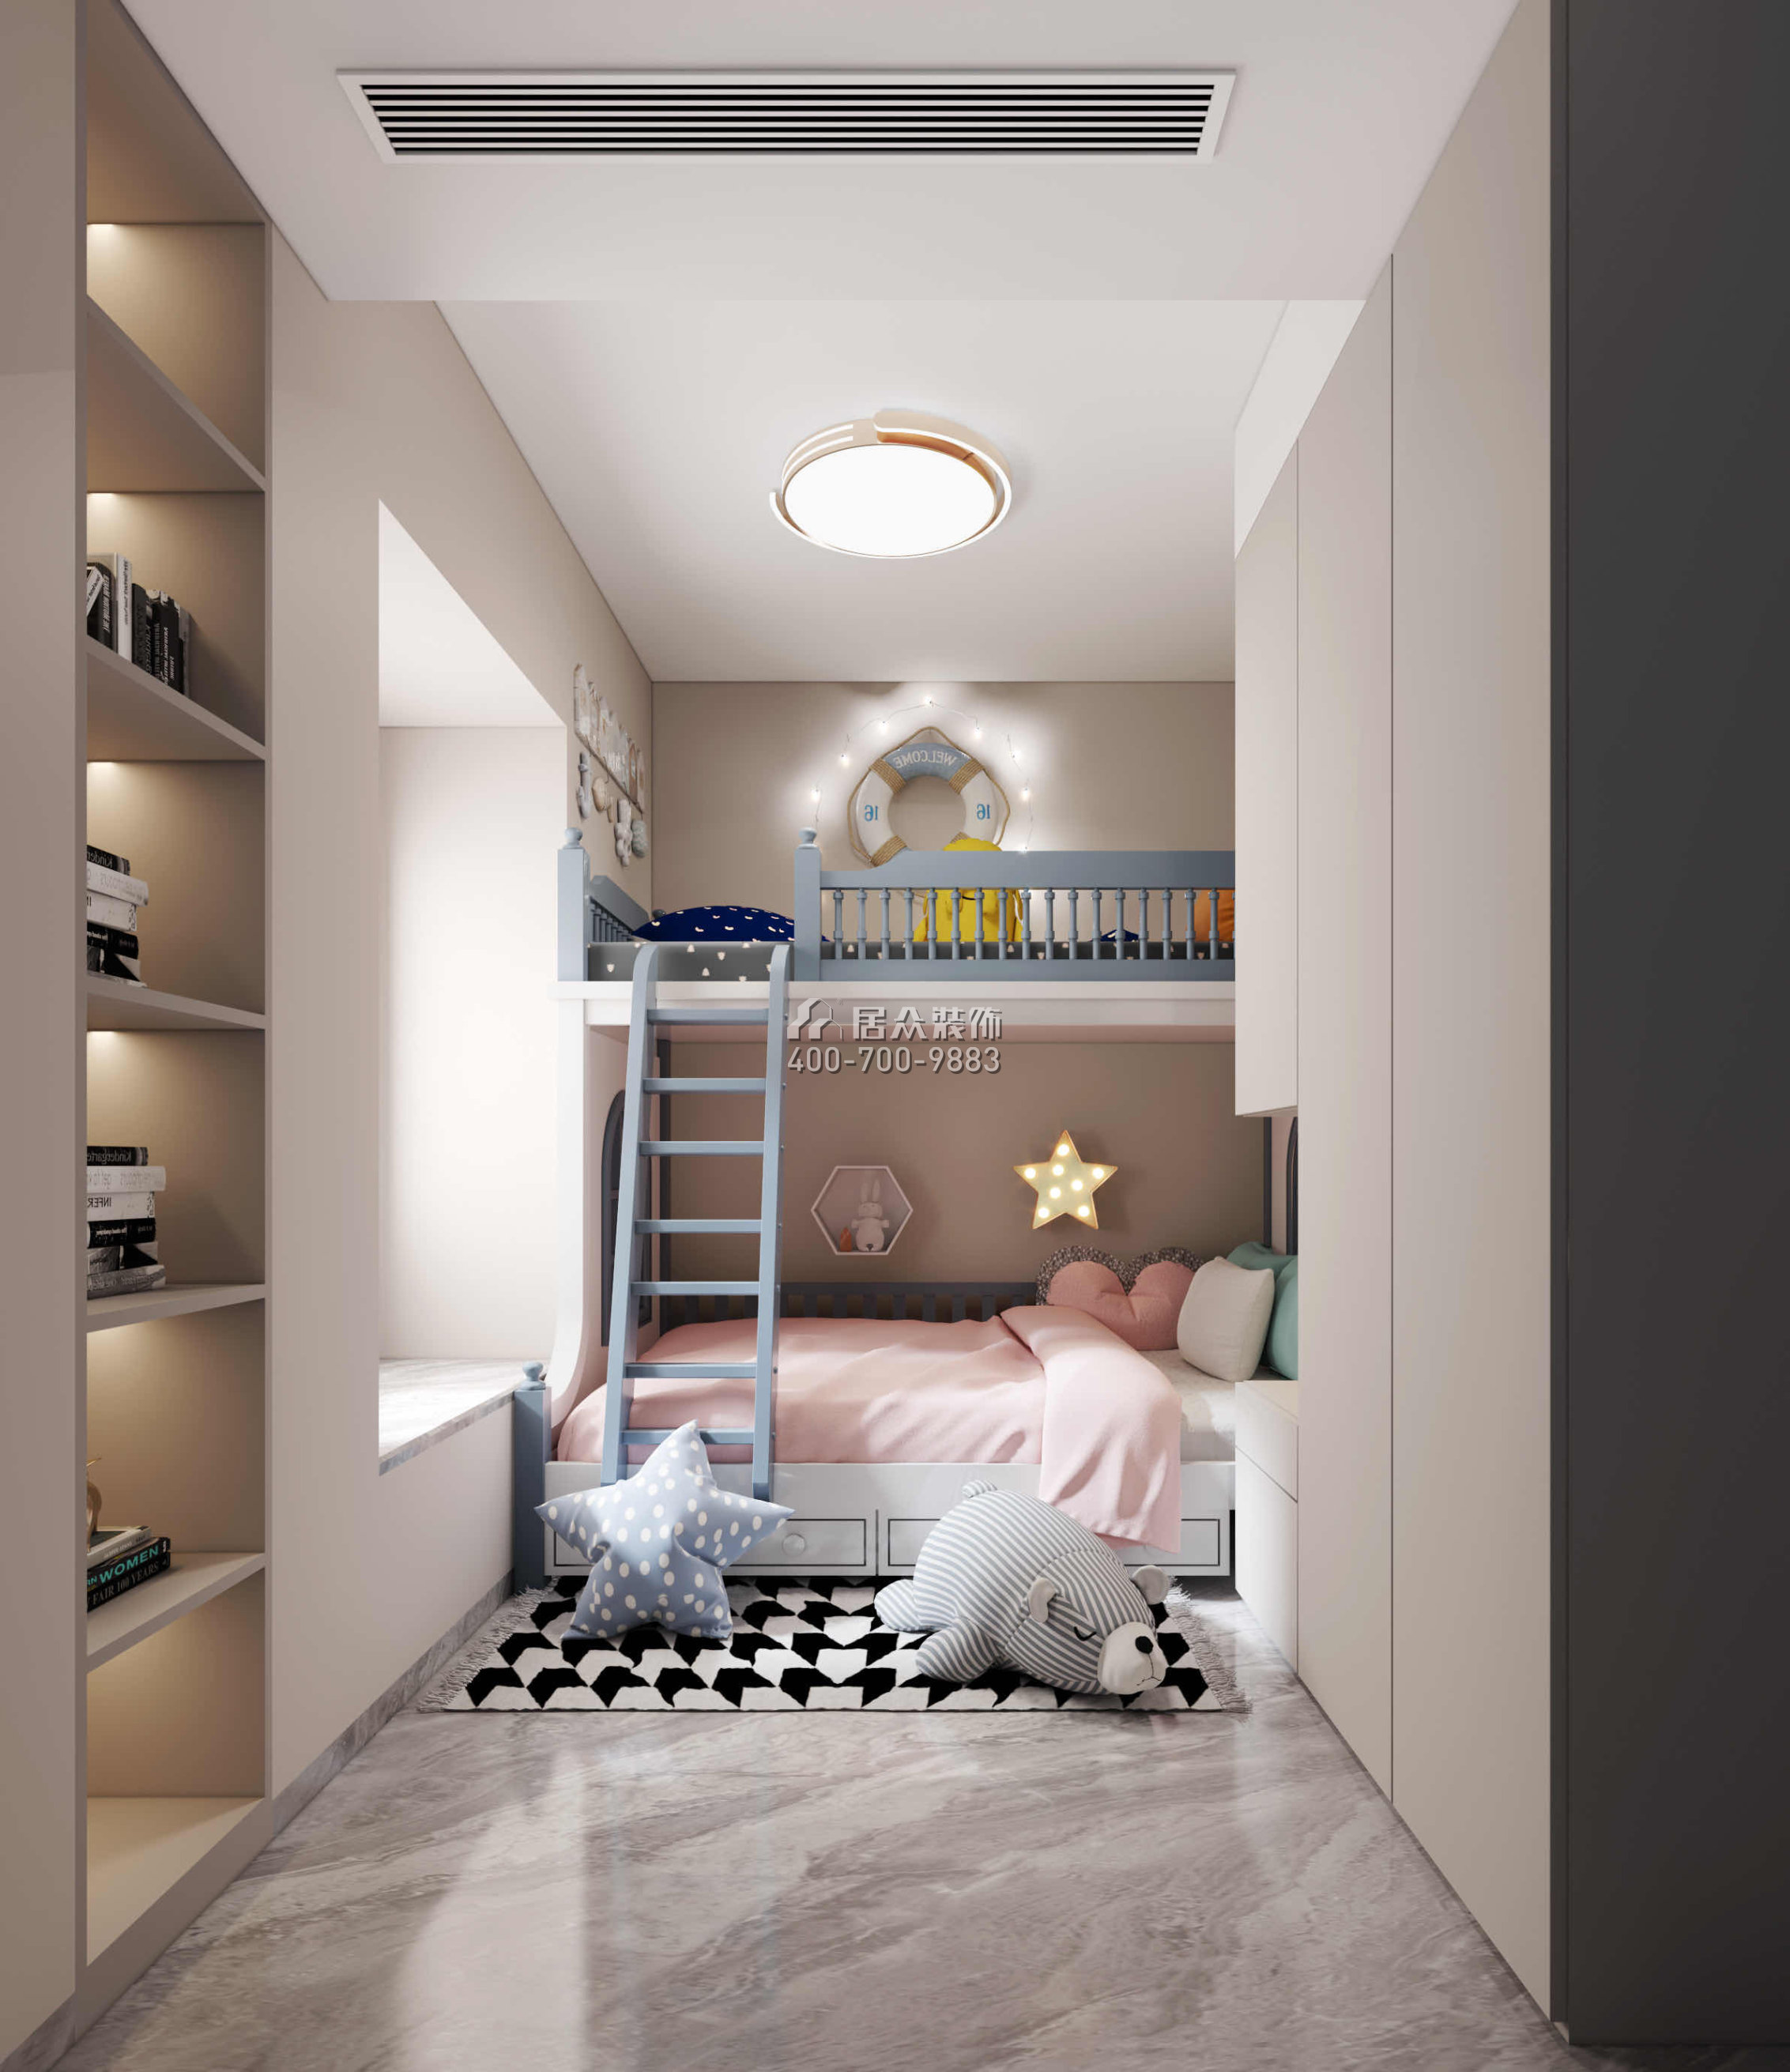 碧海紅樹園120平方米現代簡約風格平層戶型兒童房裝修效果圖